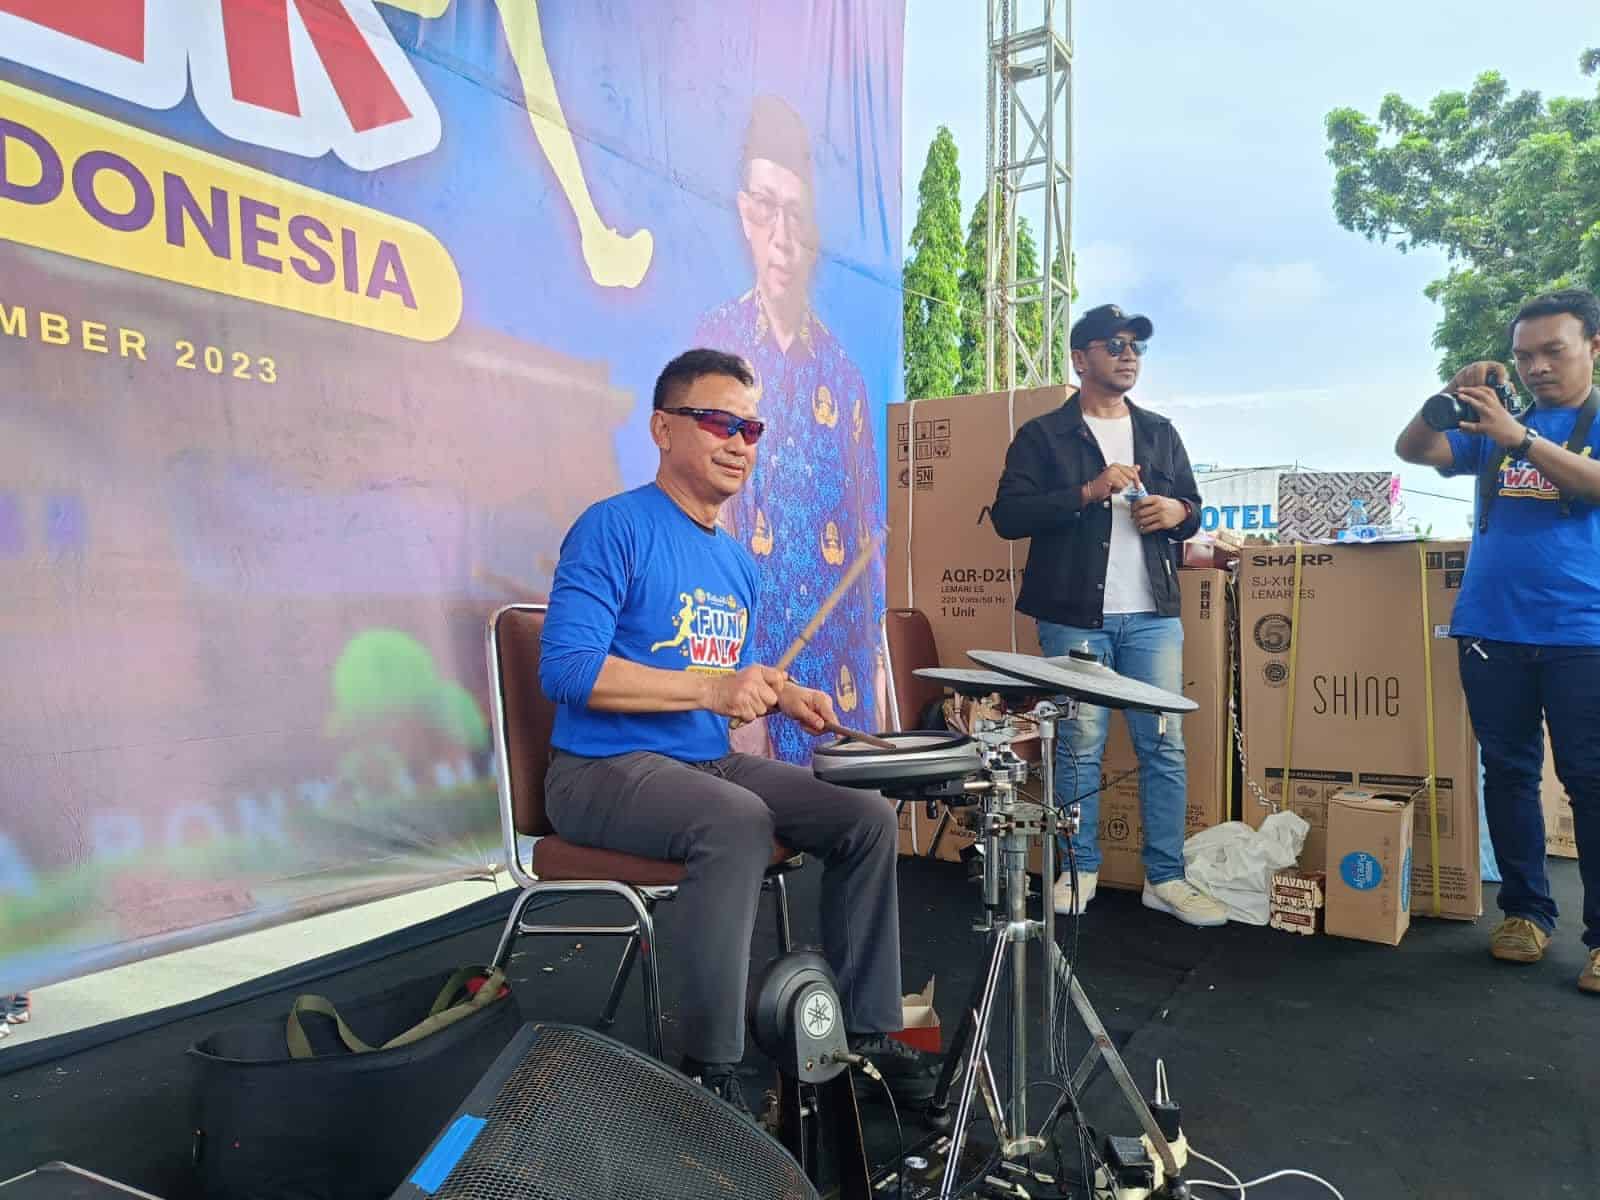 Wali Kota Pontianak, Edi Rusdi Kamtono bermain drum di depan ribuan peserta Fun Walk HUT ke-52 Korps Pegawai Republik Indonesia (Korpri) di depan Kantor Wali Kota Pontianak, Jalan Rahadi Usman, Sabtu (25/11/2023). (Foto: Prokopim Pontianak)